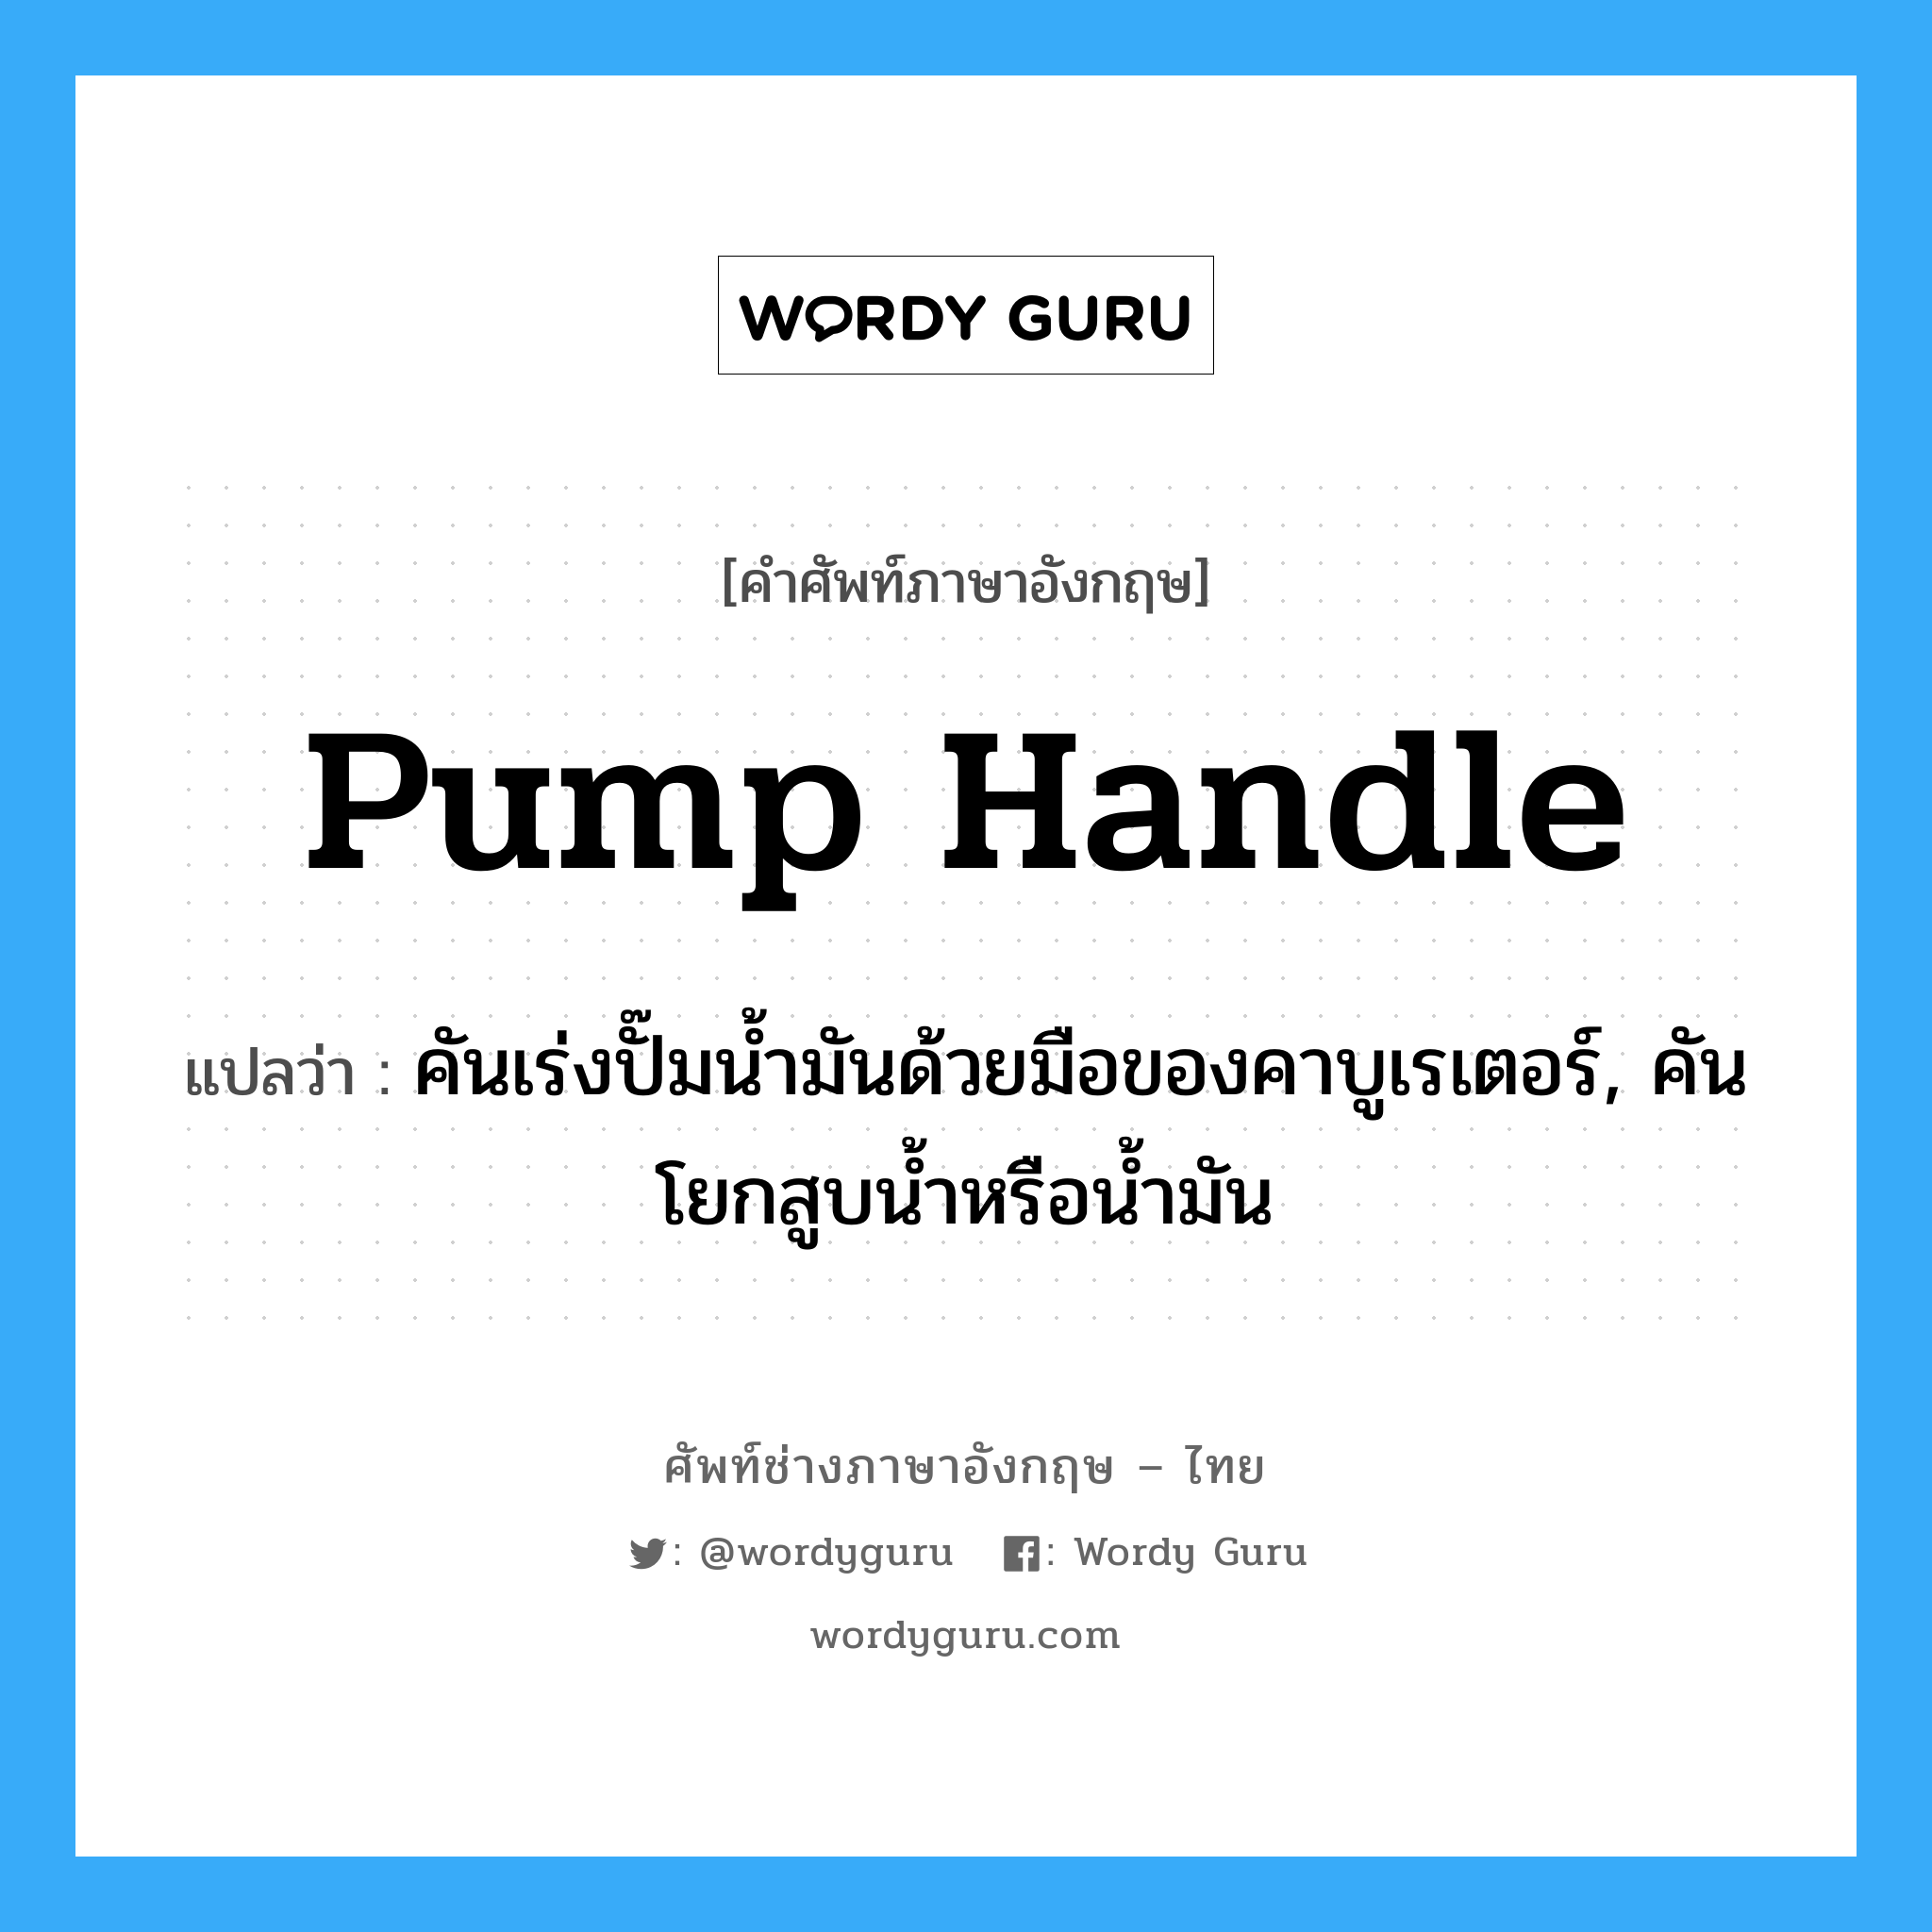 pump handle แปลว่า?, คำศัพท์ช่างภาษาอังกฤษ - ไทย pump handle คำศัพท์ภาษาอังกฤษ pump handle แปลว่า คันเร่งปั๊มน้ำมันด้วยมือของคาบูเรเตอร์, คันโยกสูบน้ำหรือน้ำมัน